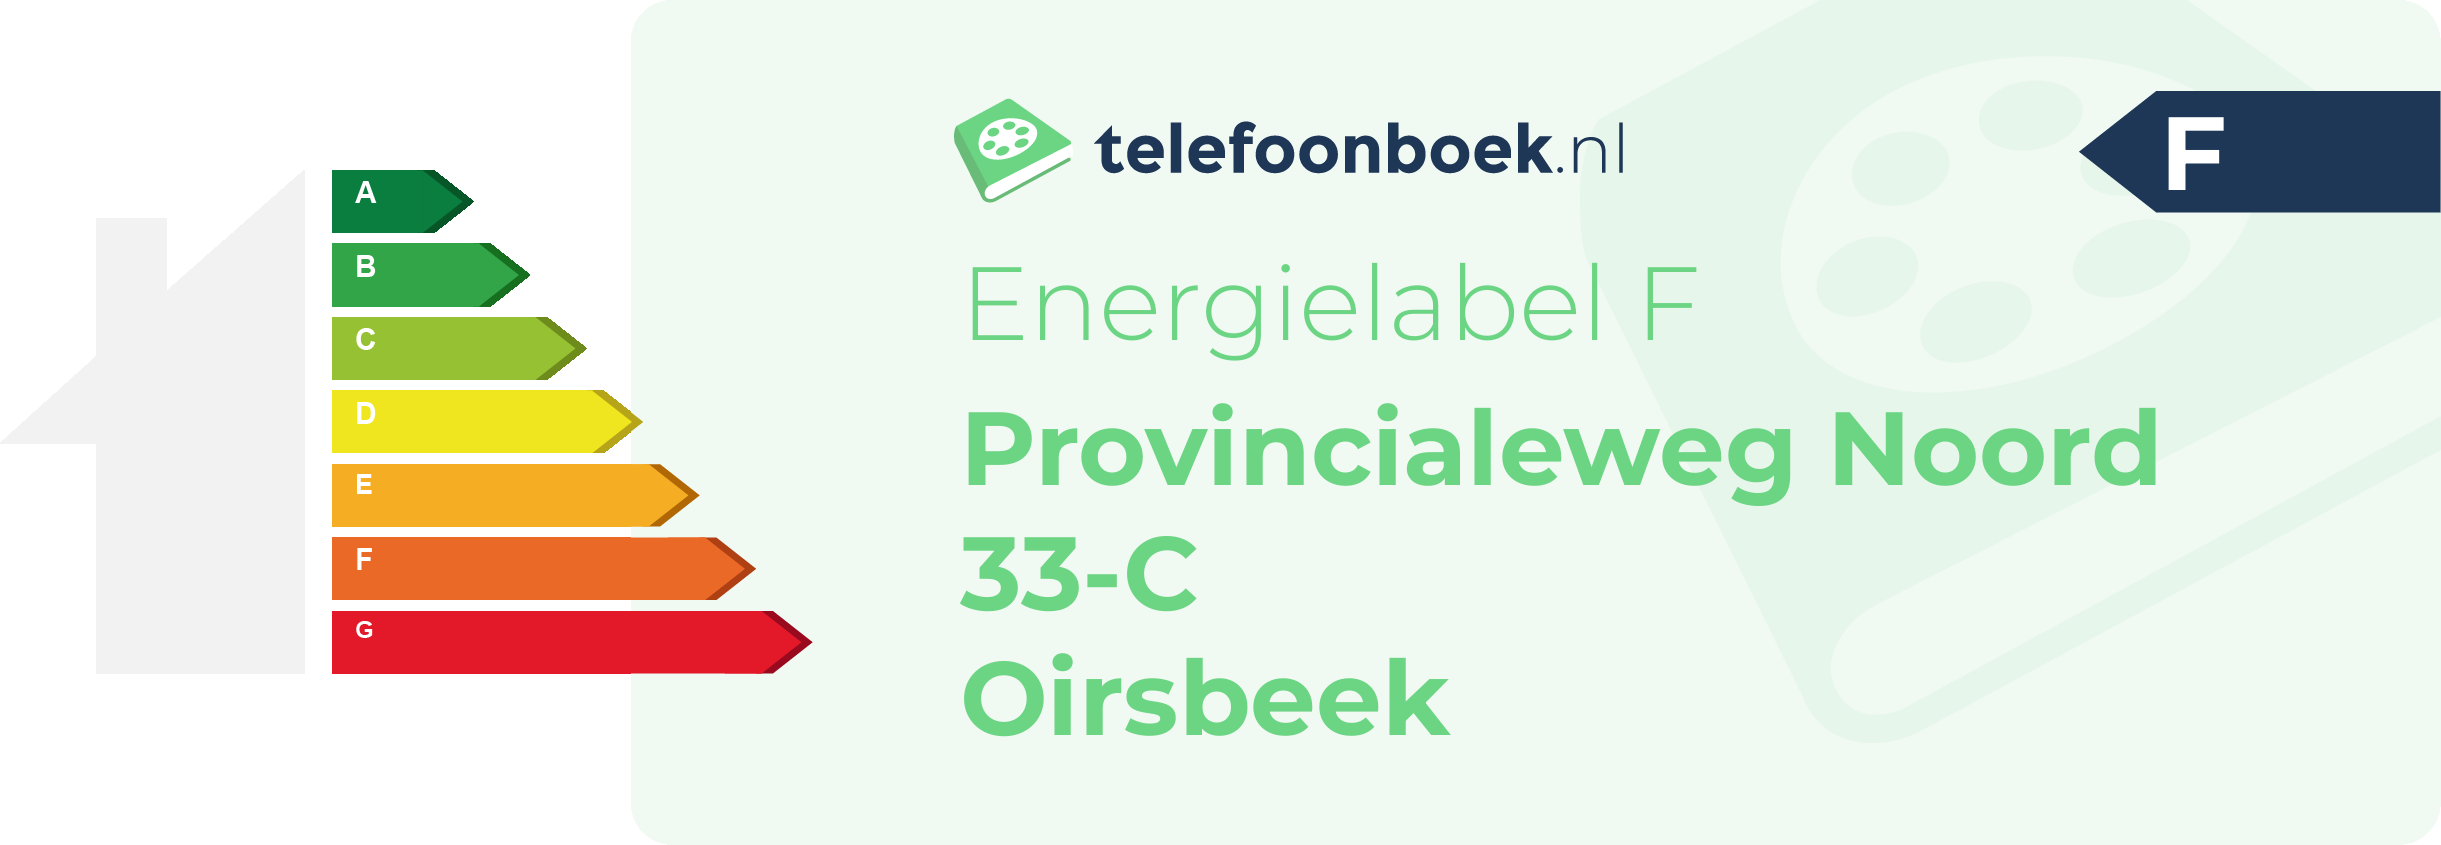 Energielabel Provincialeweg Noord 33-C Oirsbeek